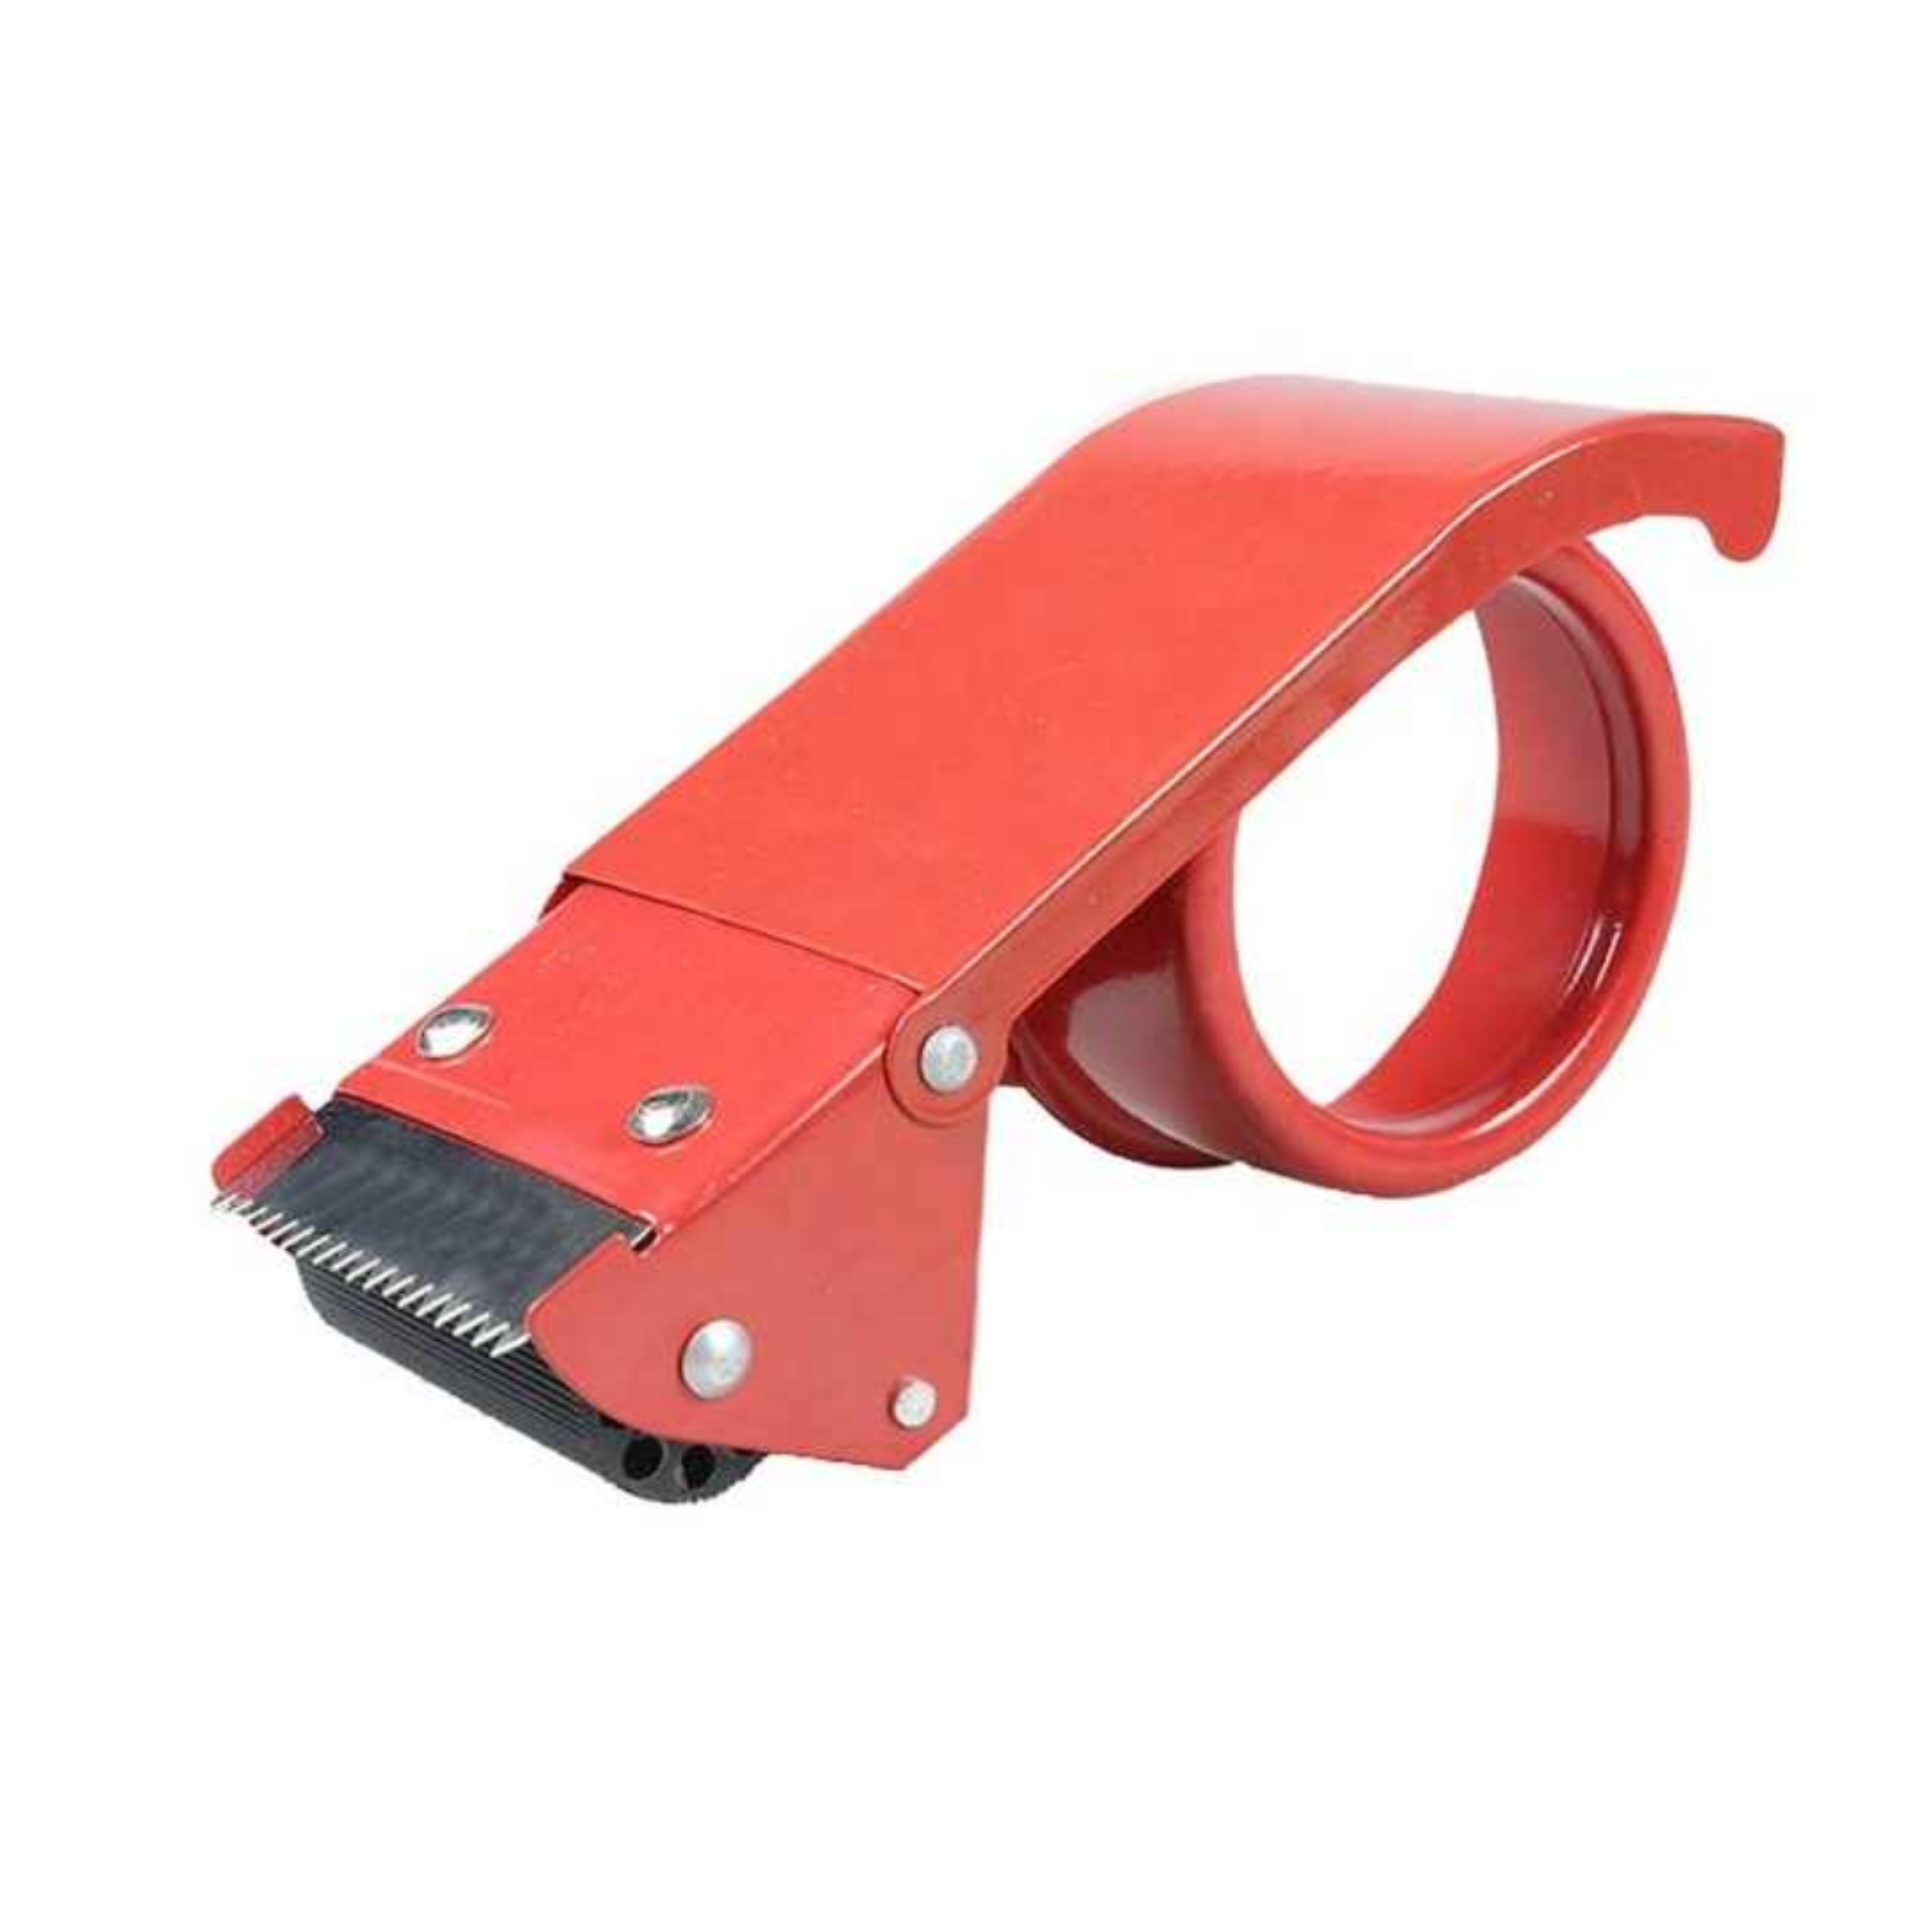 دستگاه چسب پهن مدل Tape cutter 3895705